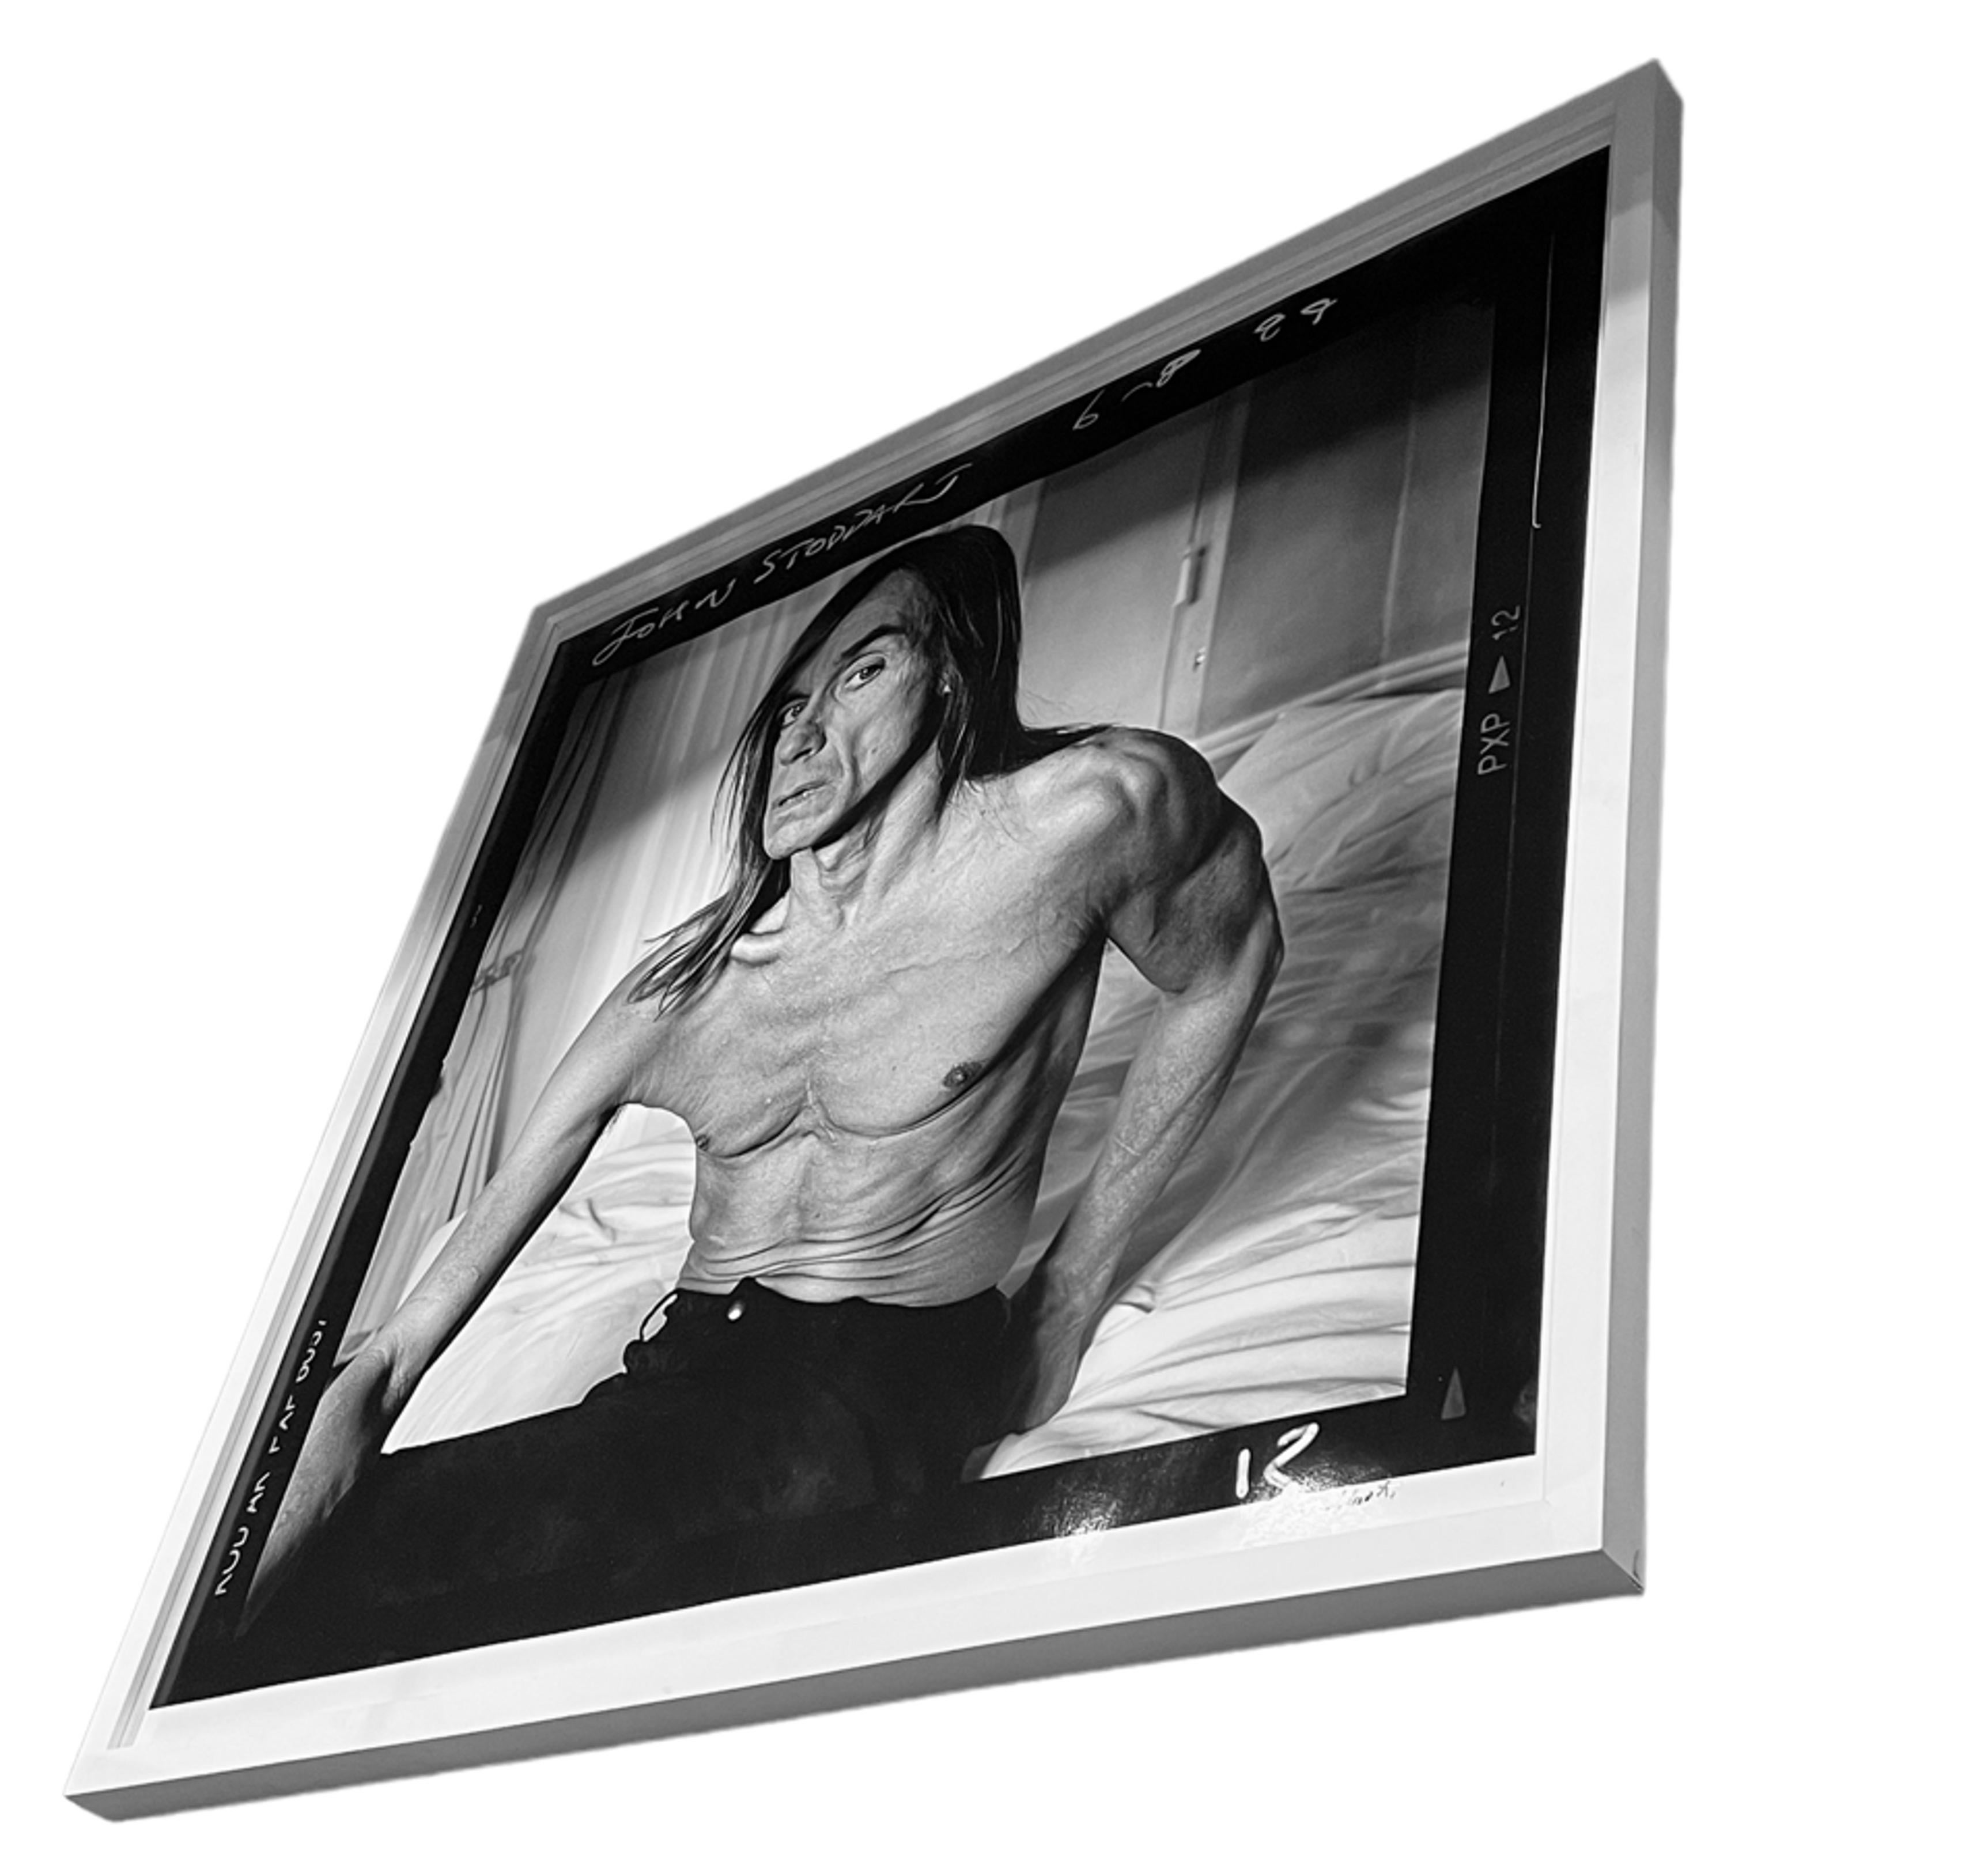 Photographie originale en noir et blanc d'Iggy Pop par le photographe John Stoddart en 1999. Grand tirage au chiffon d'archive d'une édition de 10 exemplaires, signé en bas. John Stoddart est surtout connu pour avoir pris des dizaines de photos de